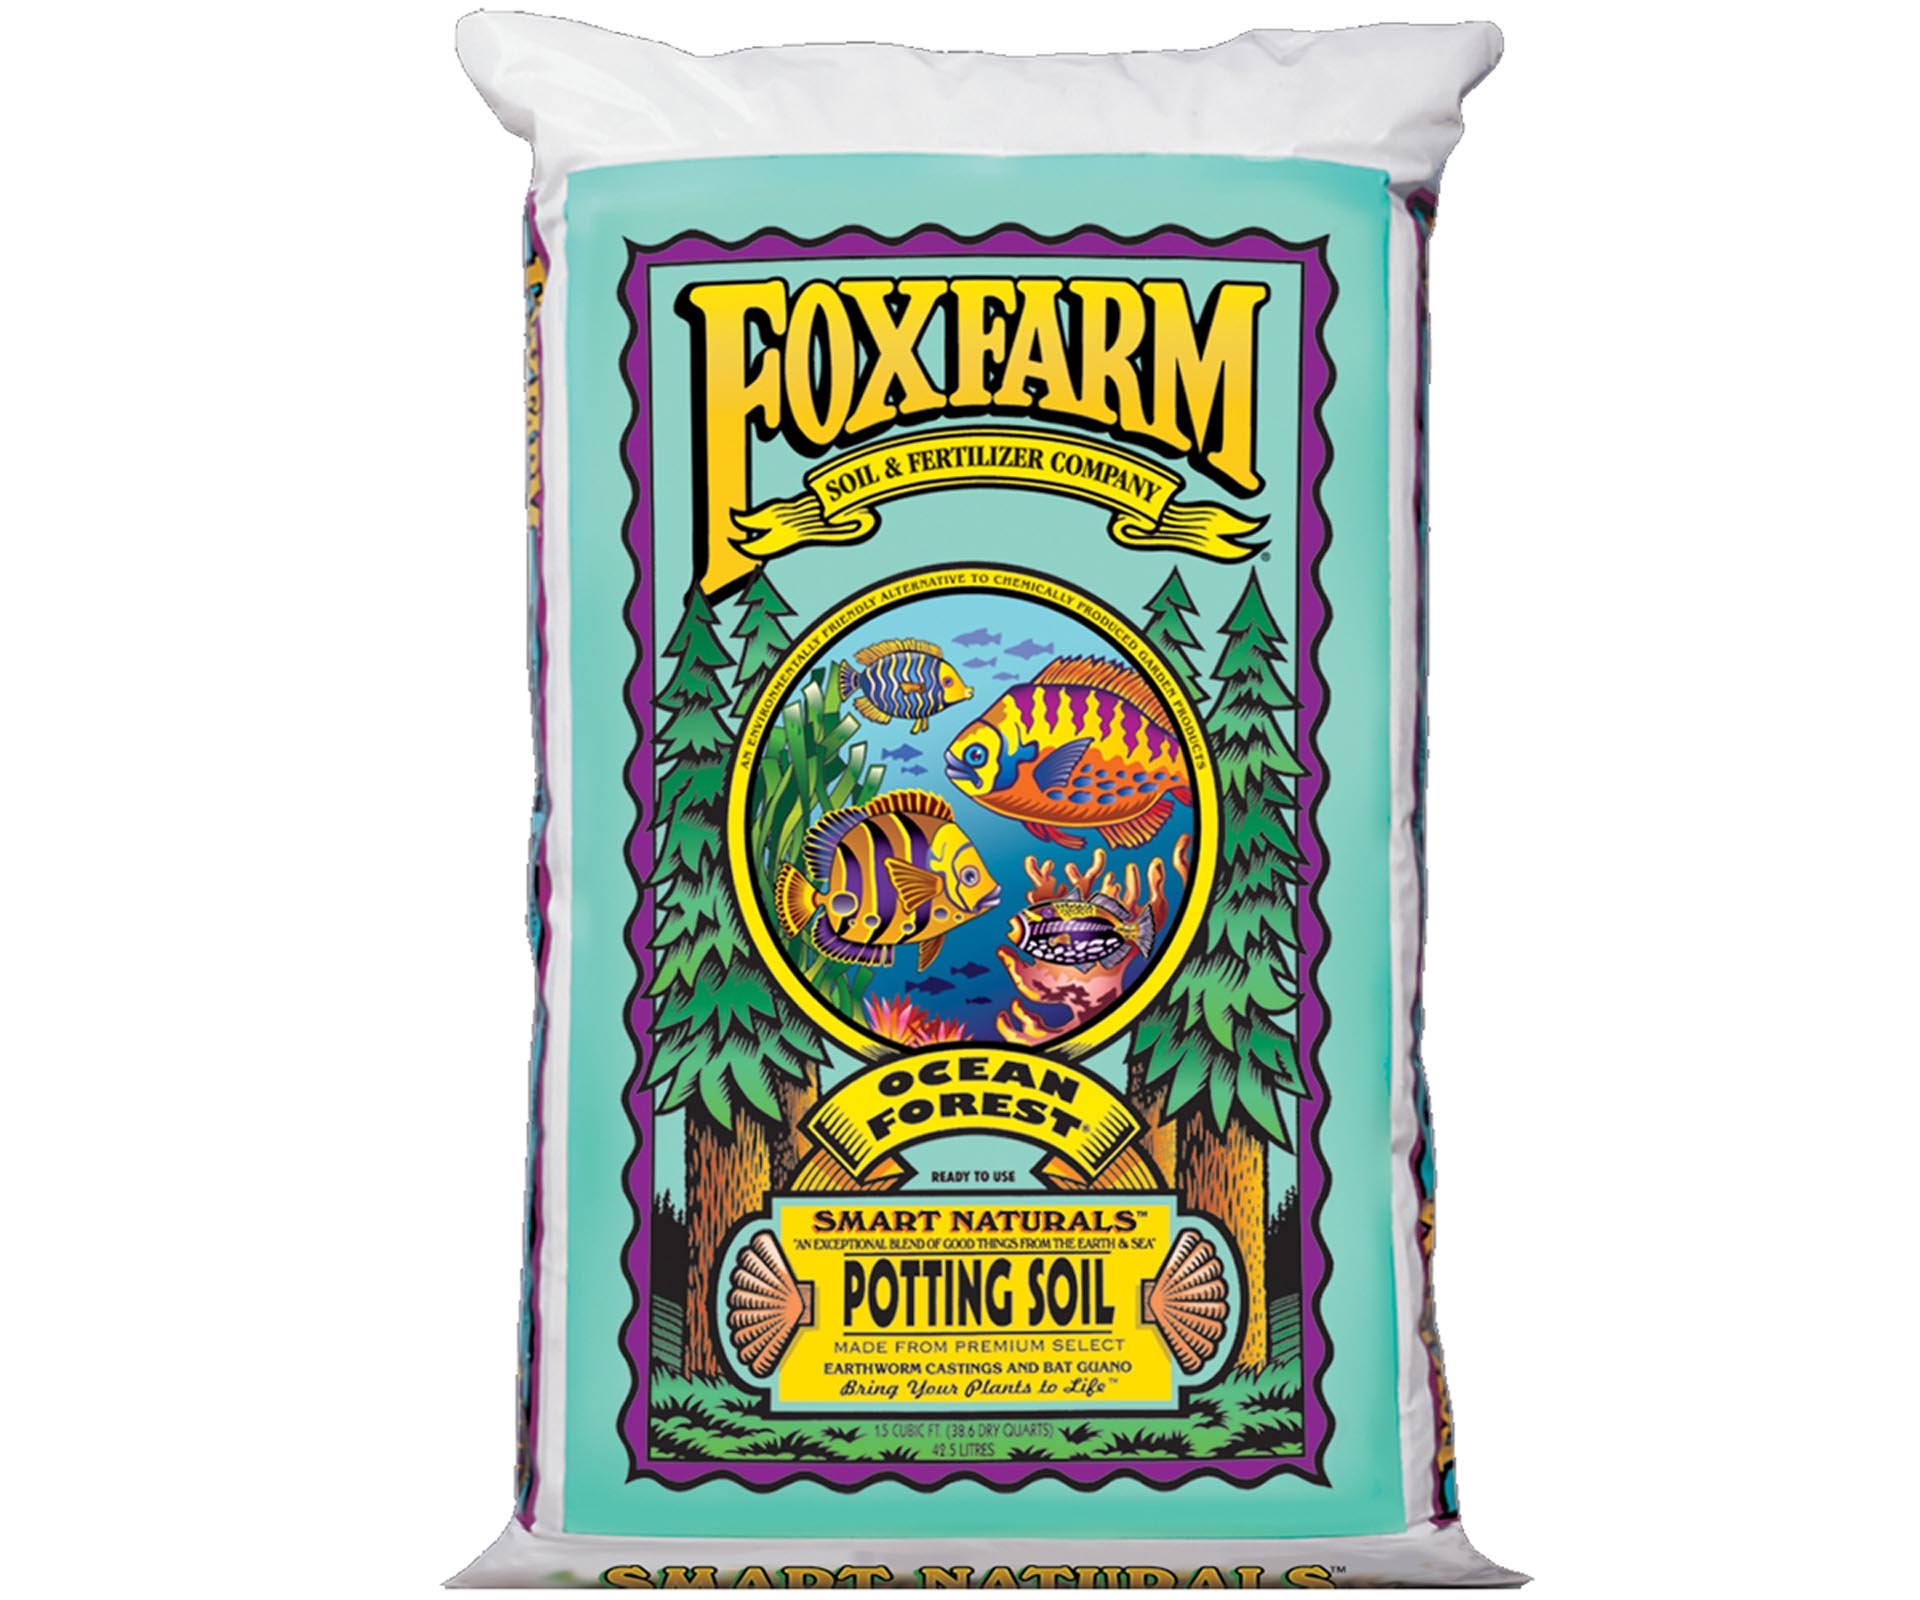 FoxFarm FX14000 Ocean Forest Plant Garden Potting Soil Mix 6.3-6.8 pH, 34 Pounds - image 1 of 5